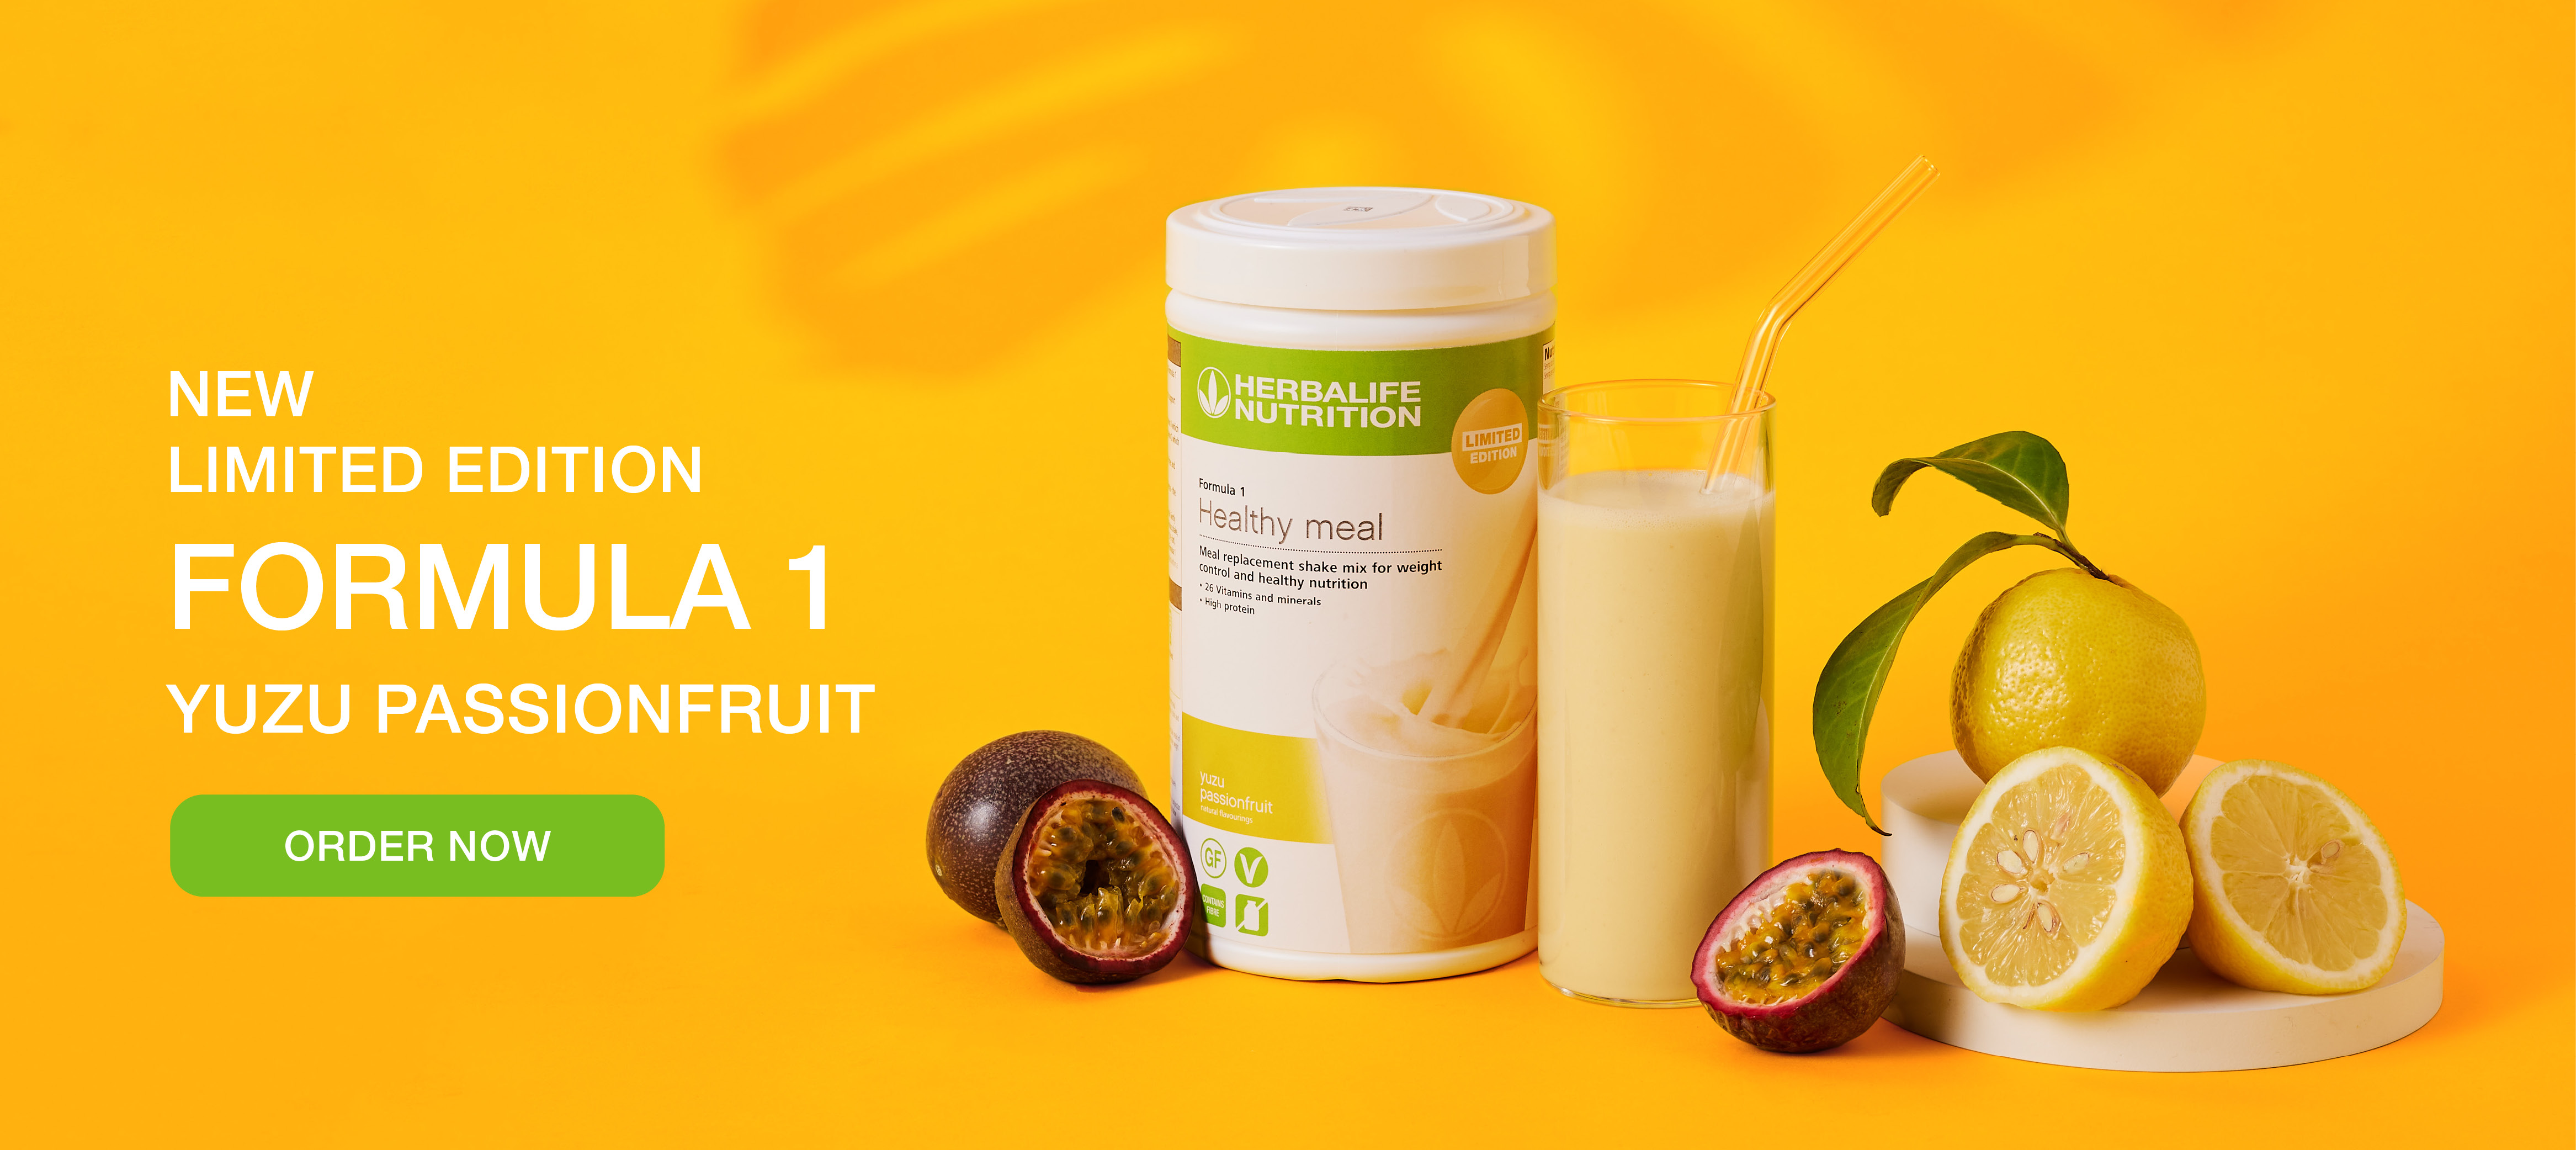 Formula 1 Limited Edition Protein Shake Yuzu Passionfruit product shot